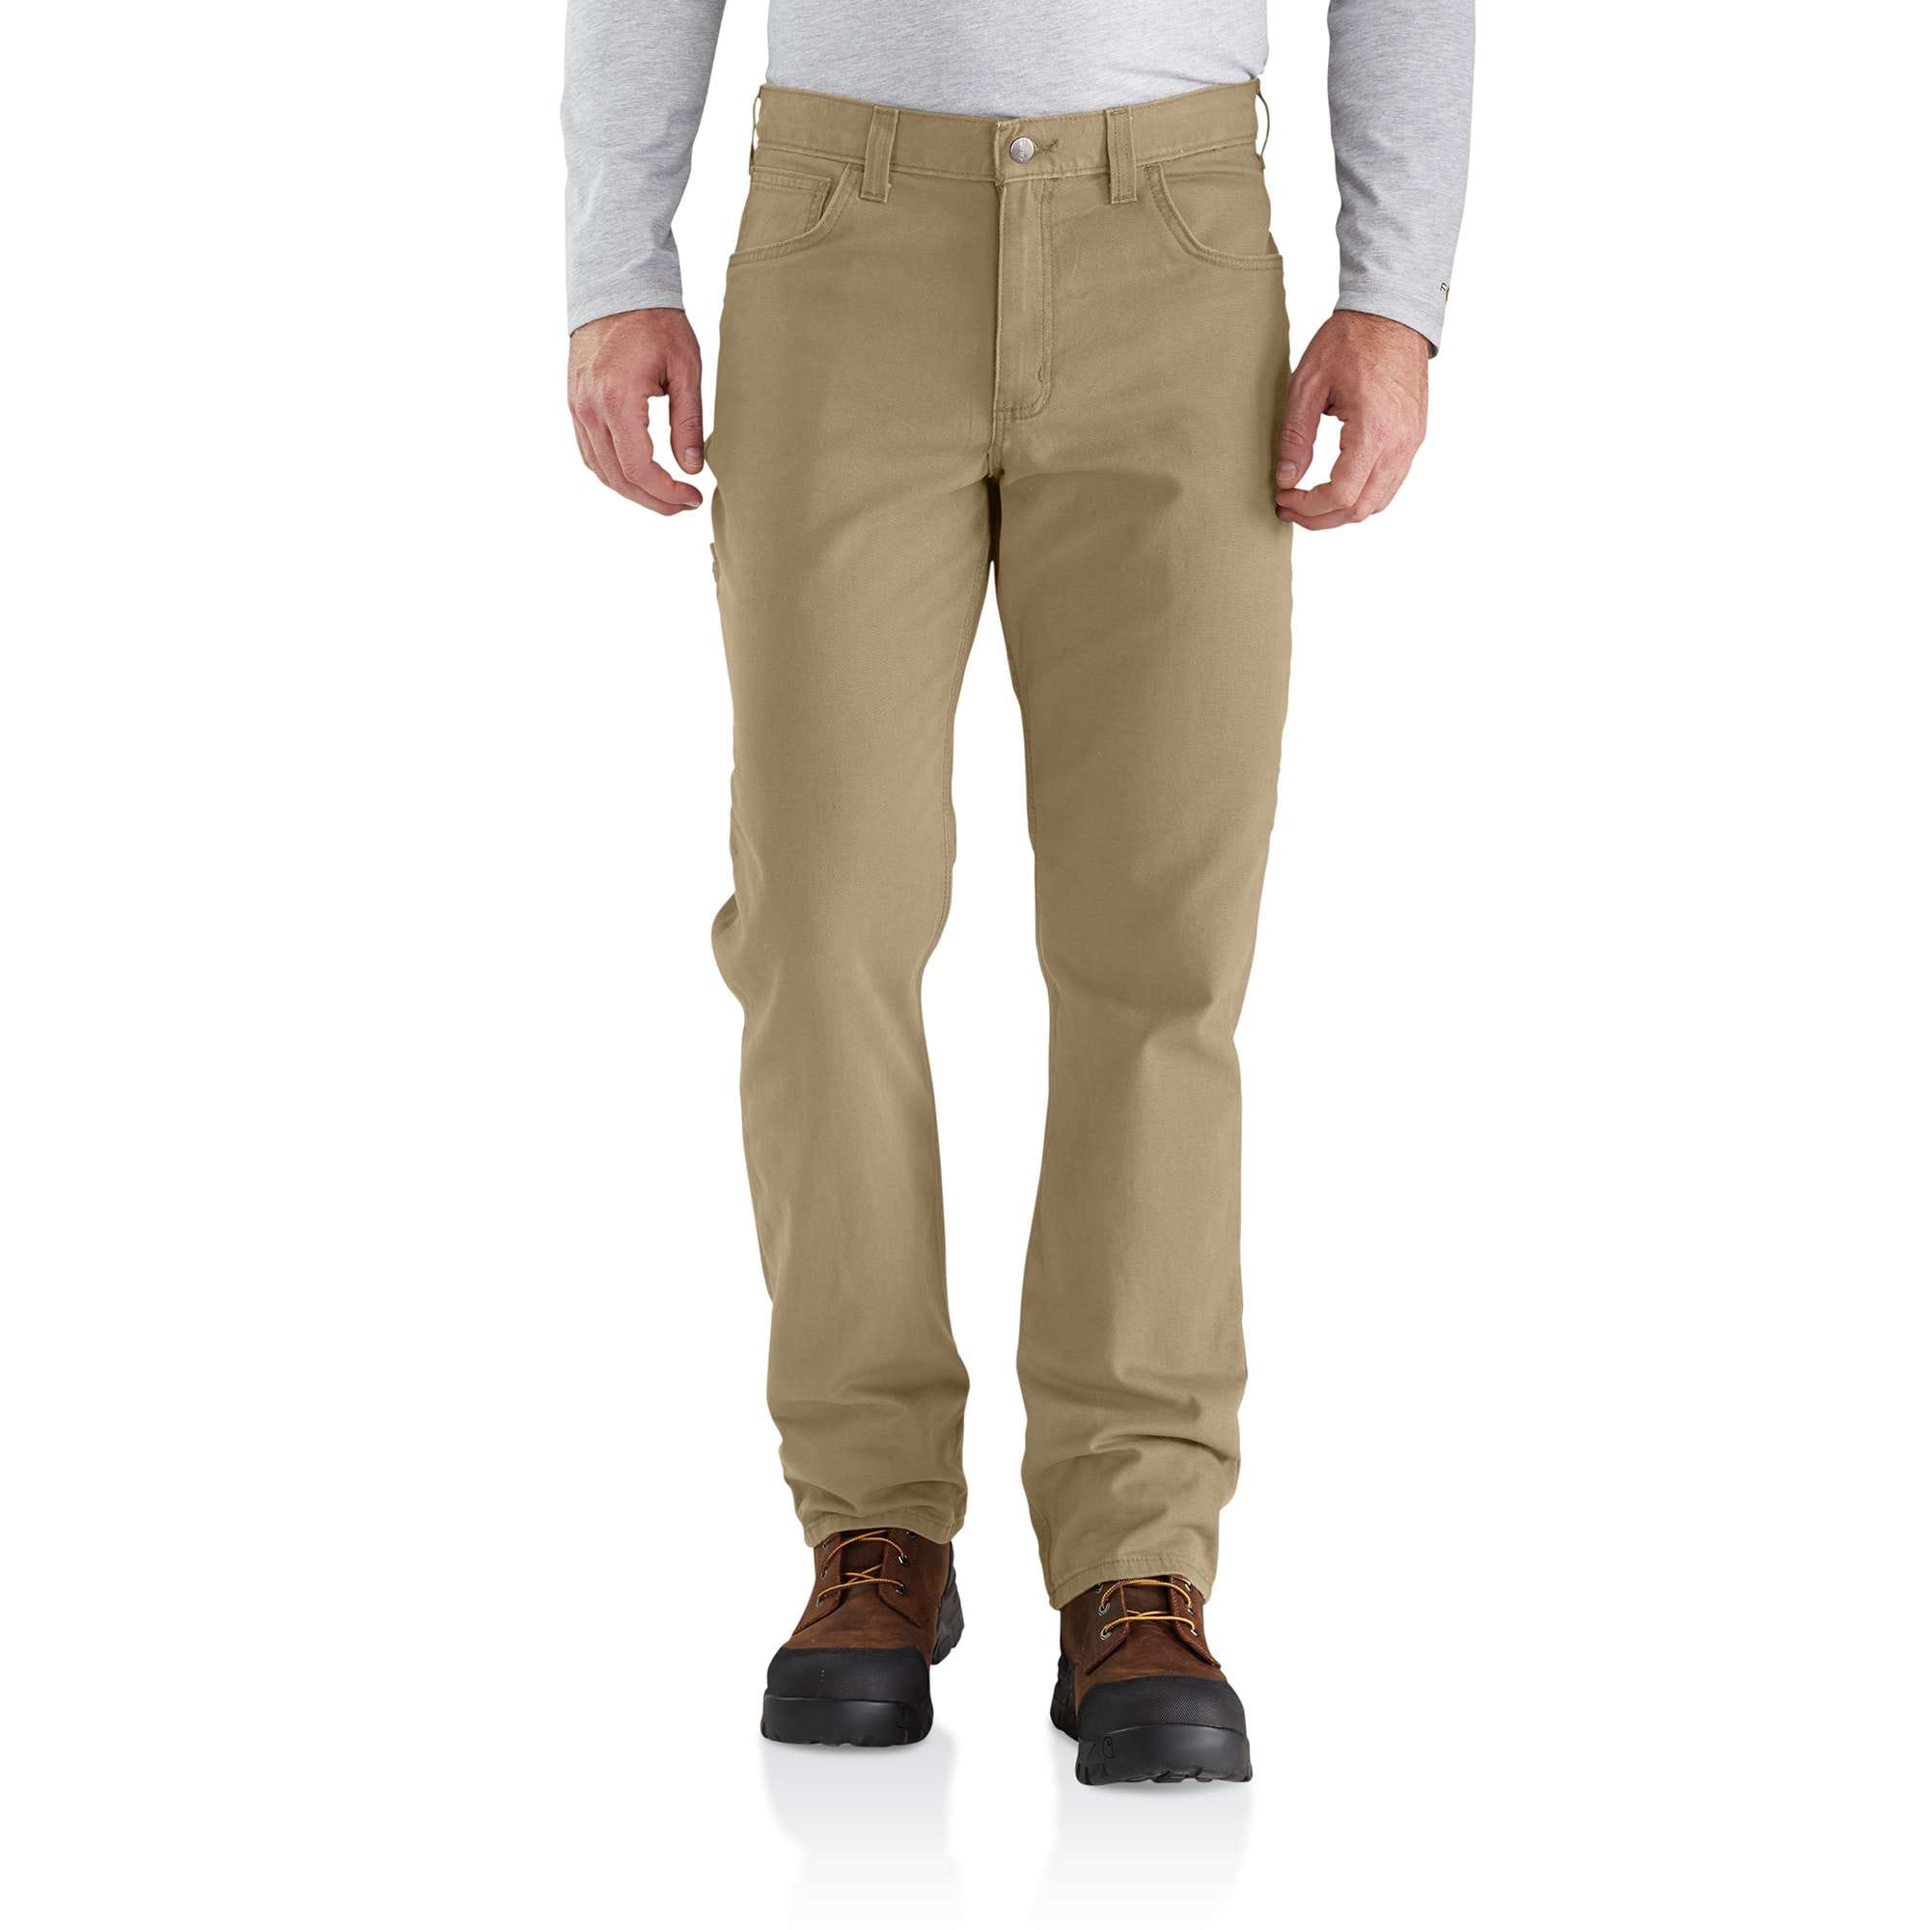 Men's Casual 5-pocket Pants - Shop Online Now